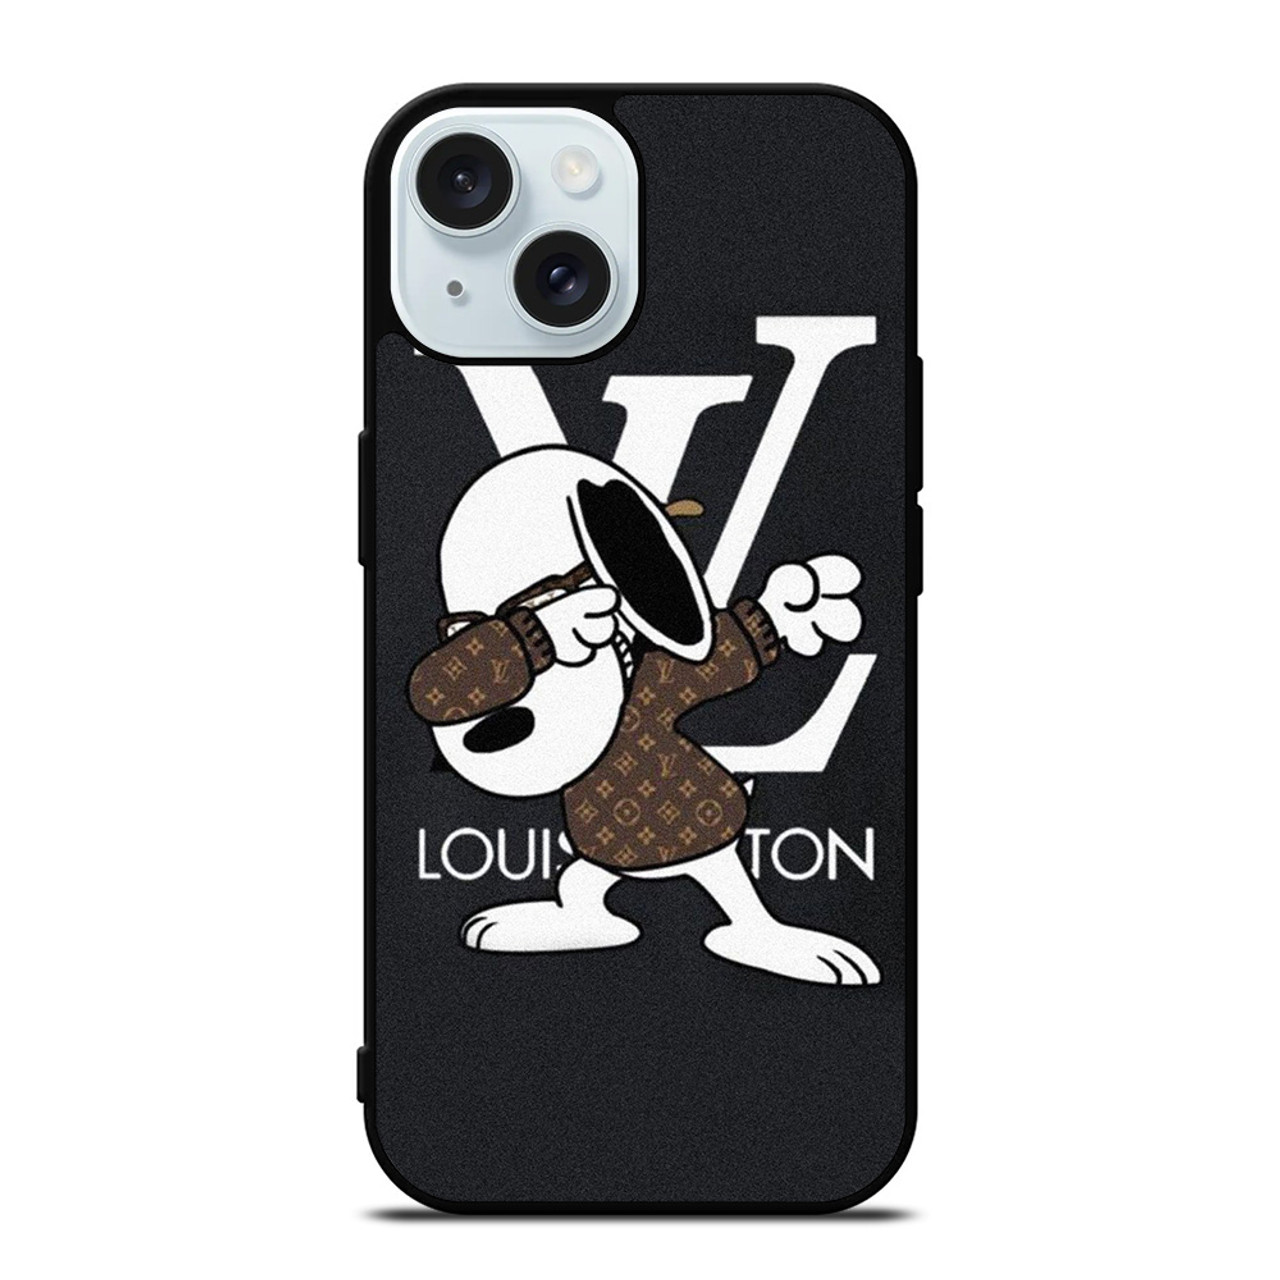 LOUIS VUITTON LV PINK SPARKLE iPhone 6 / 6S Plus Case Cover